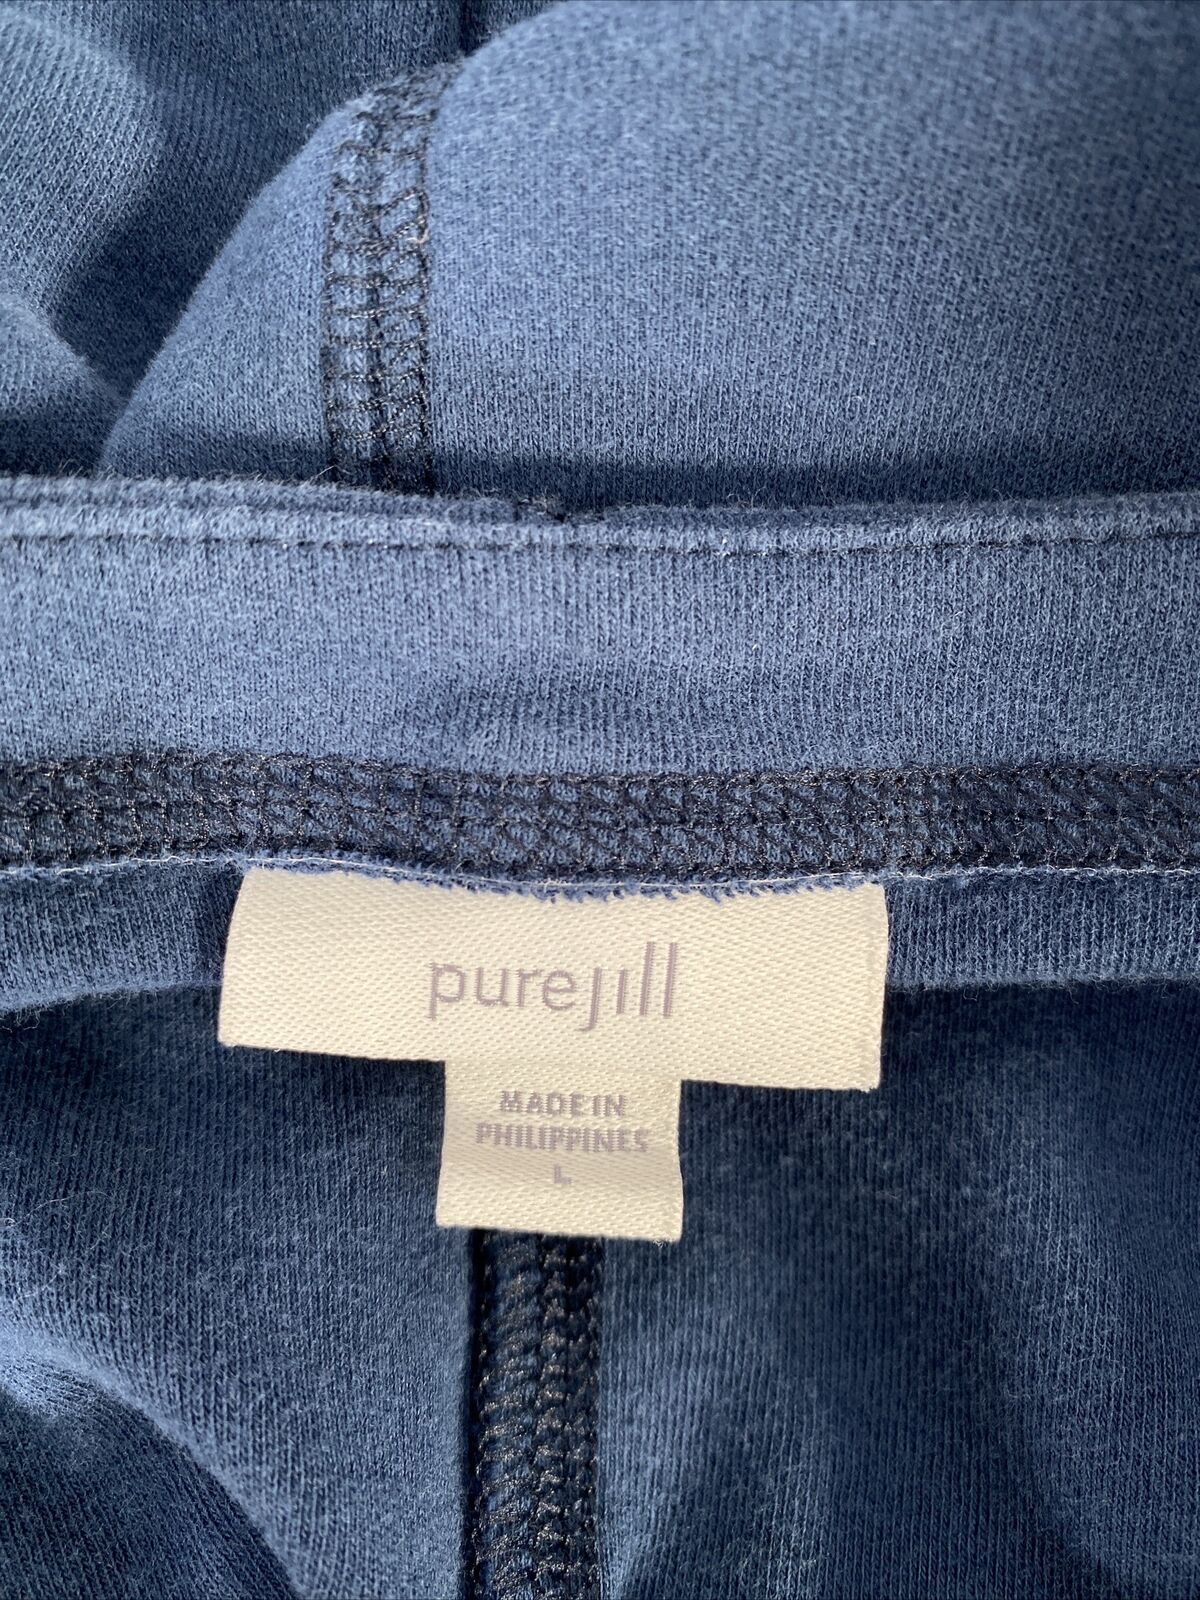 Pure Jill Women's Blue Long Sleeve Crewneck Oversized Shirt - L